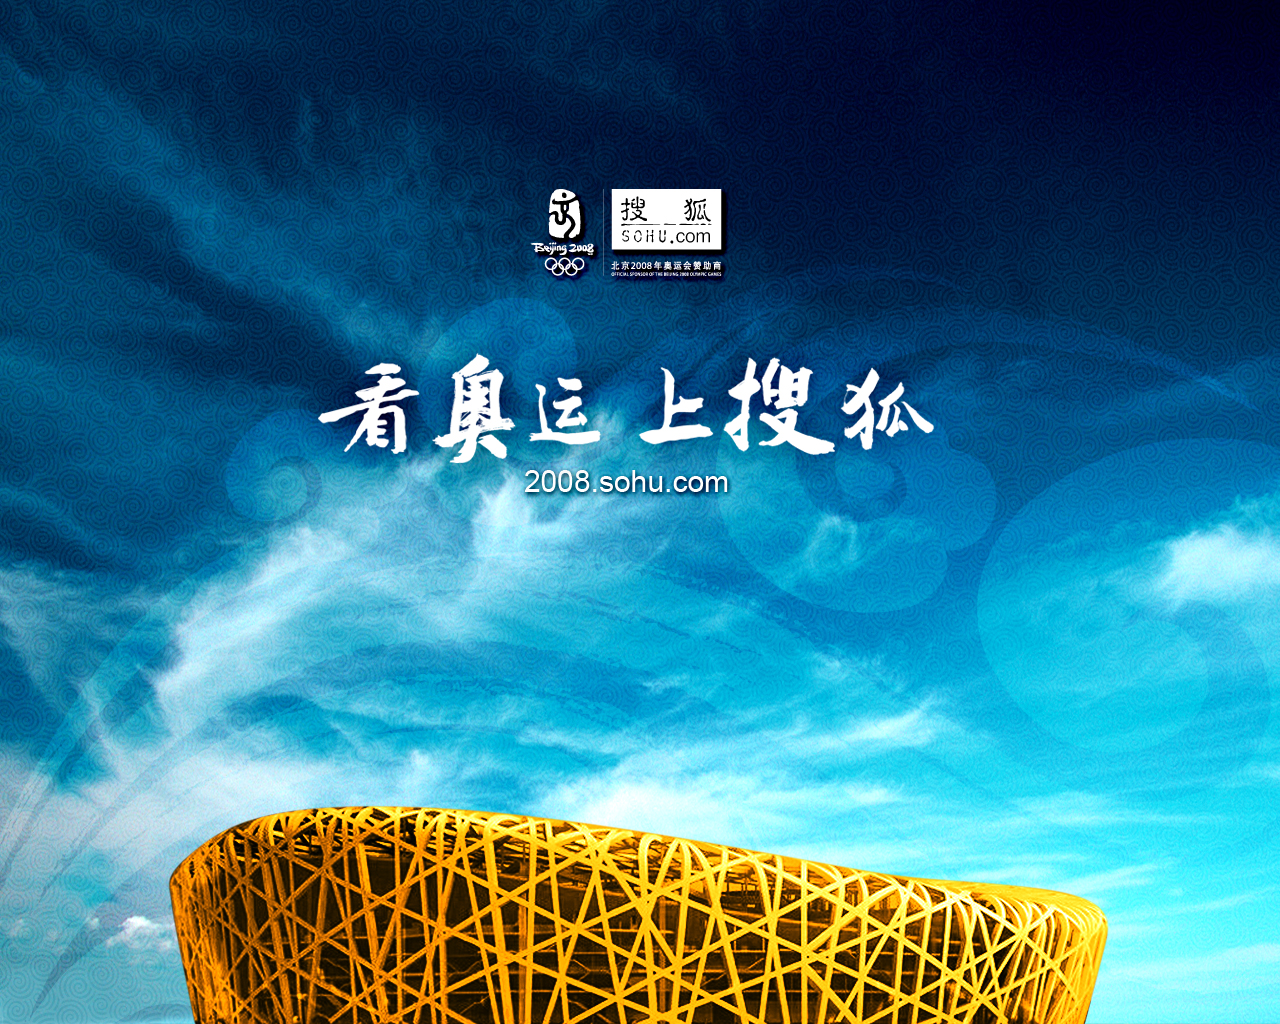 Previous, Sport - Beijing 2008 - Olympic stadium Beijing wallpaper